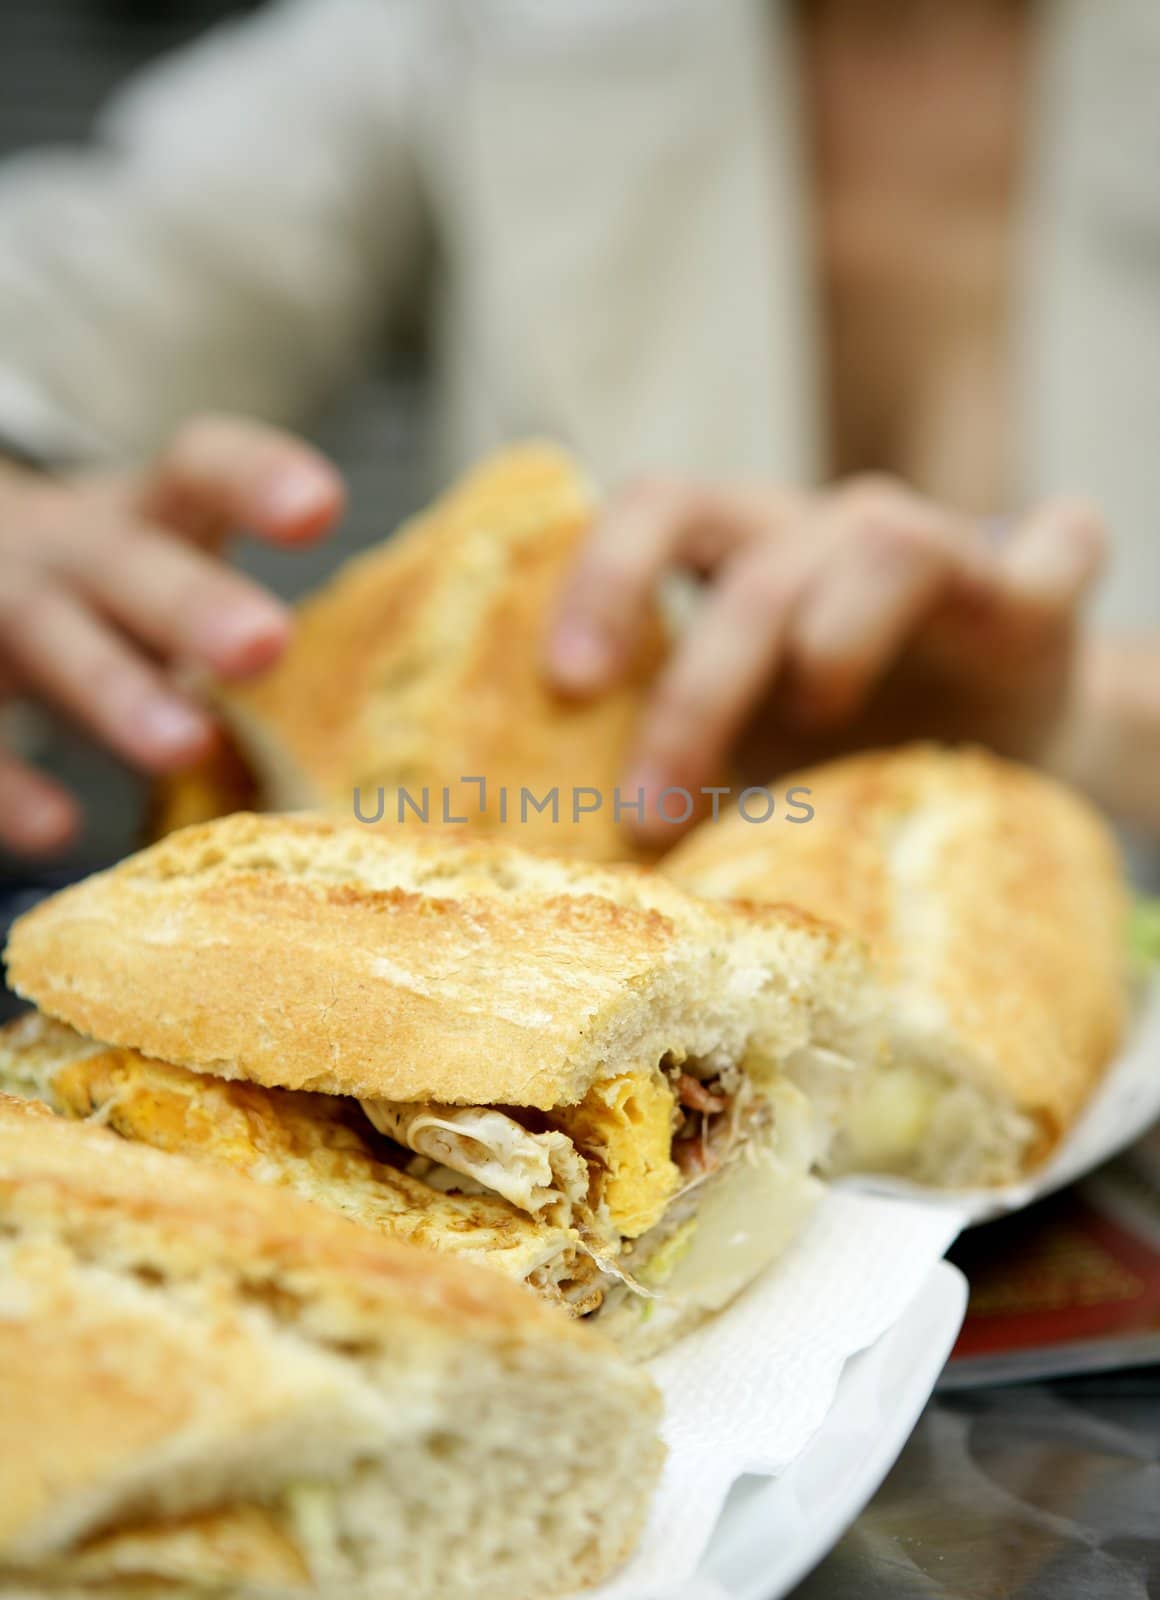 Delicious breakfast, omelet sandwich by lunamarina